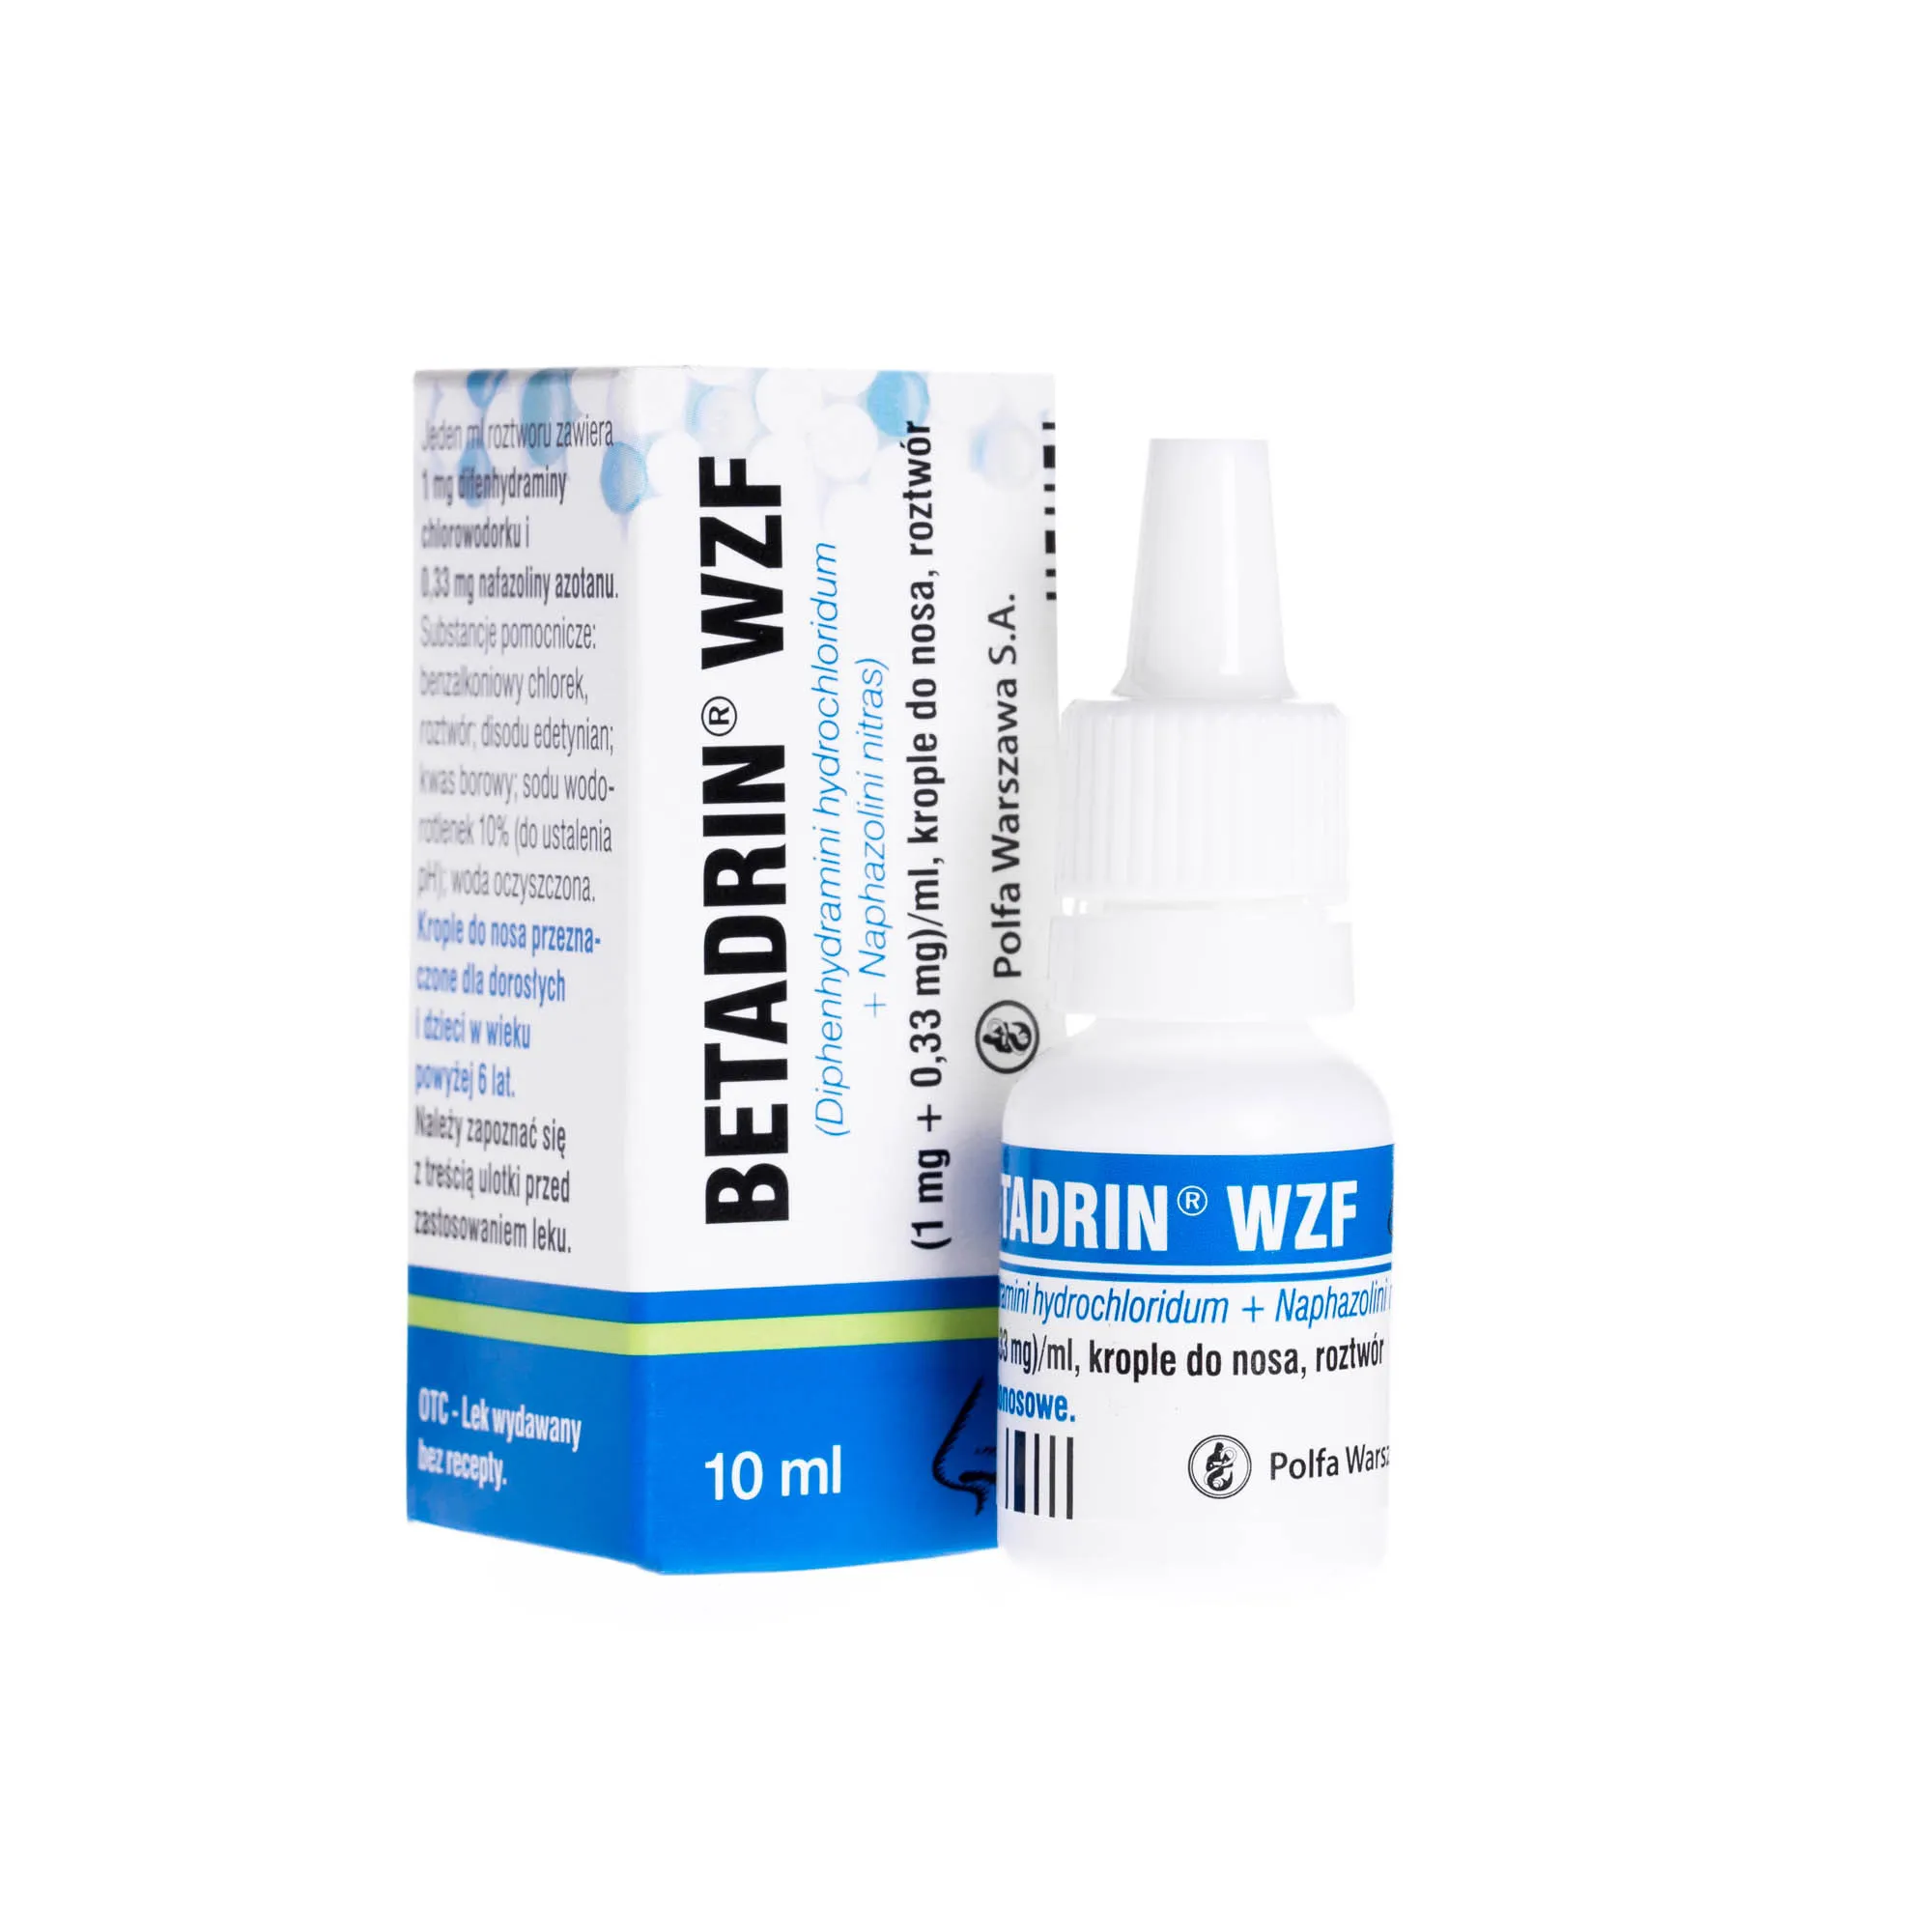 Betadrin WZF - krople do nosa przeznaczone dla dorosłych i dzieci powyżej 6 lat, 10 ml 